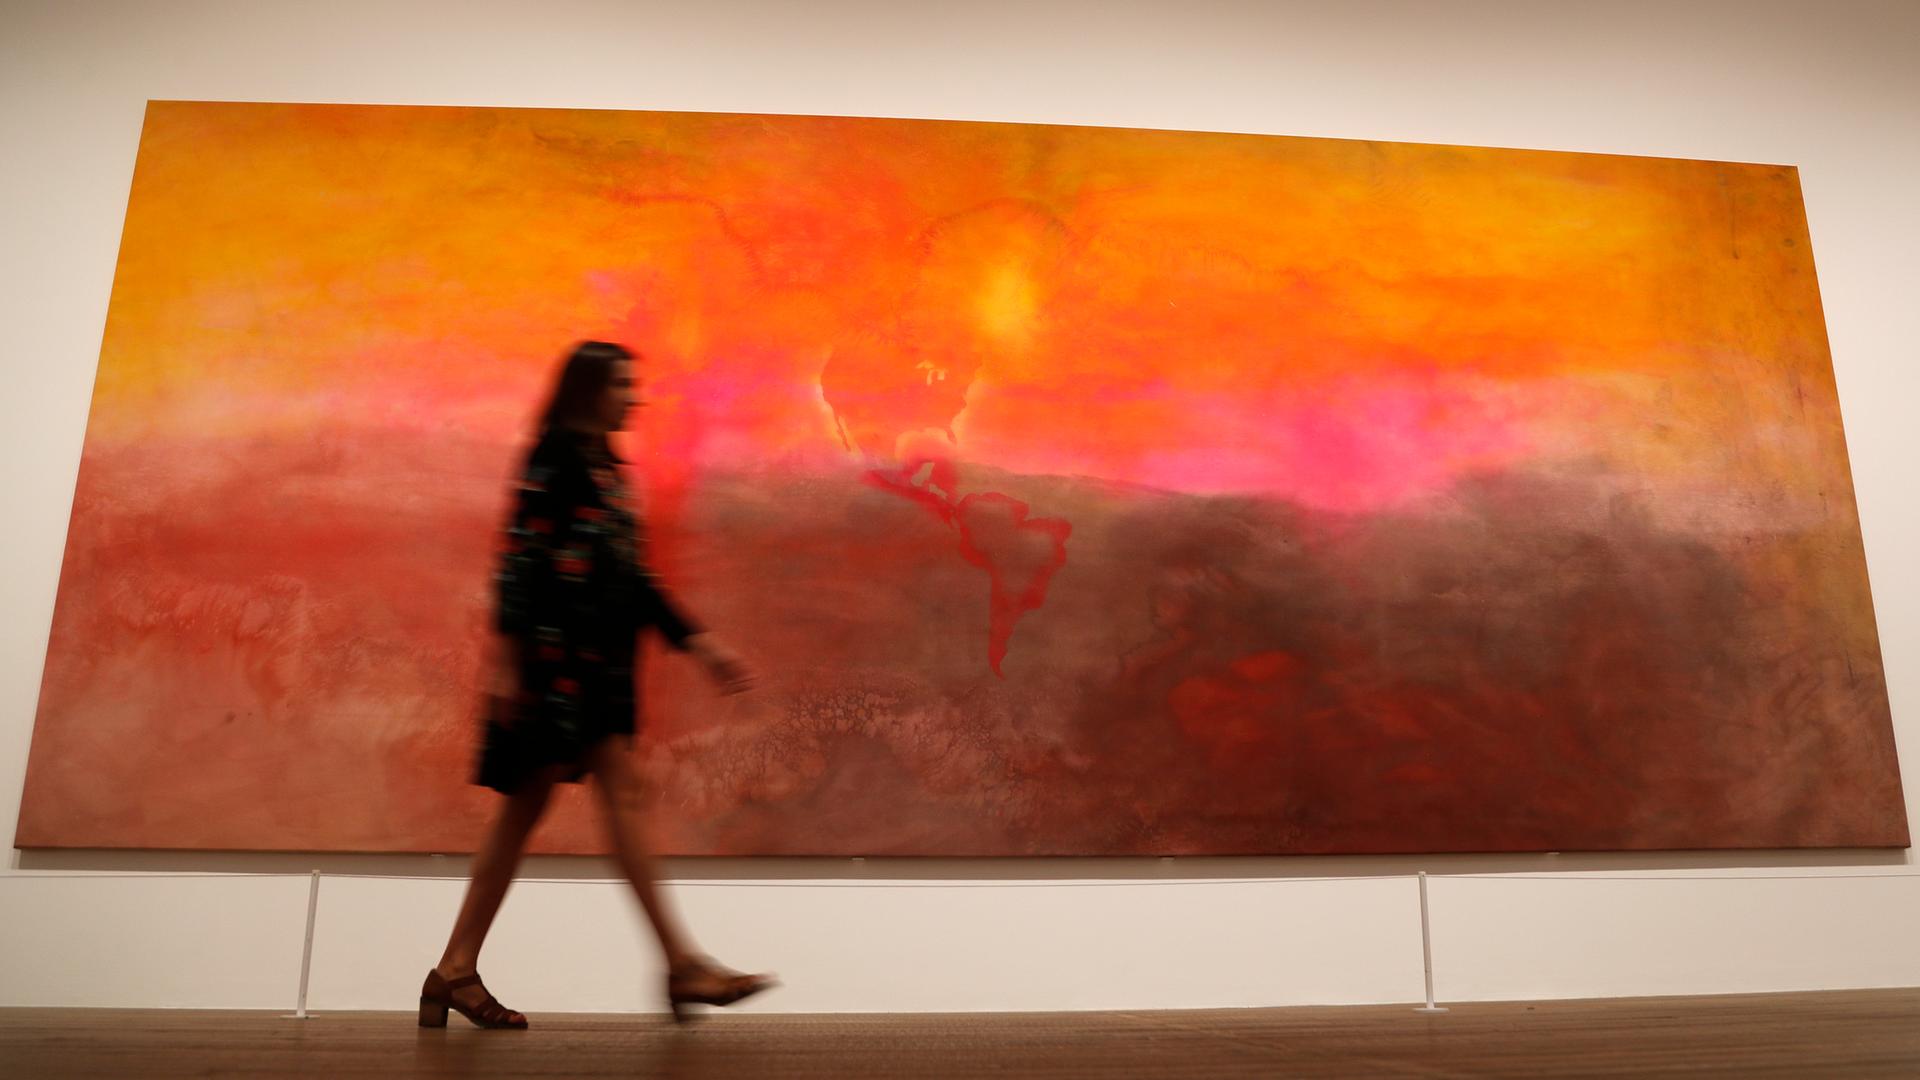 Das abstrakte Gemälde "Texas Louise" von Frank Bowling, davor eine Frau die daran vorbeigeht